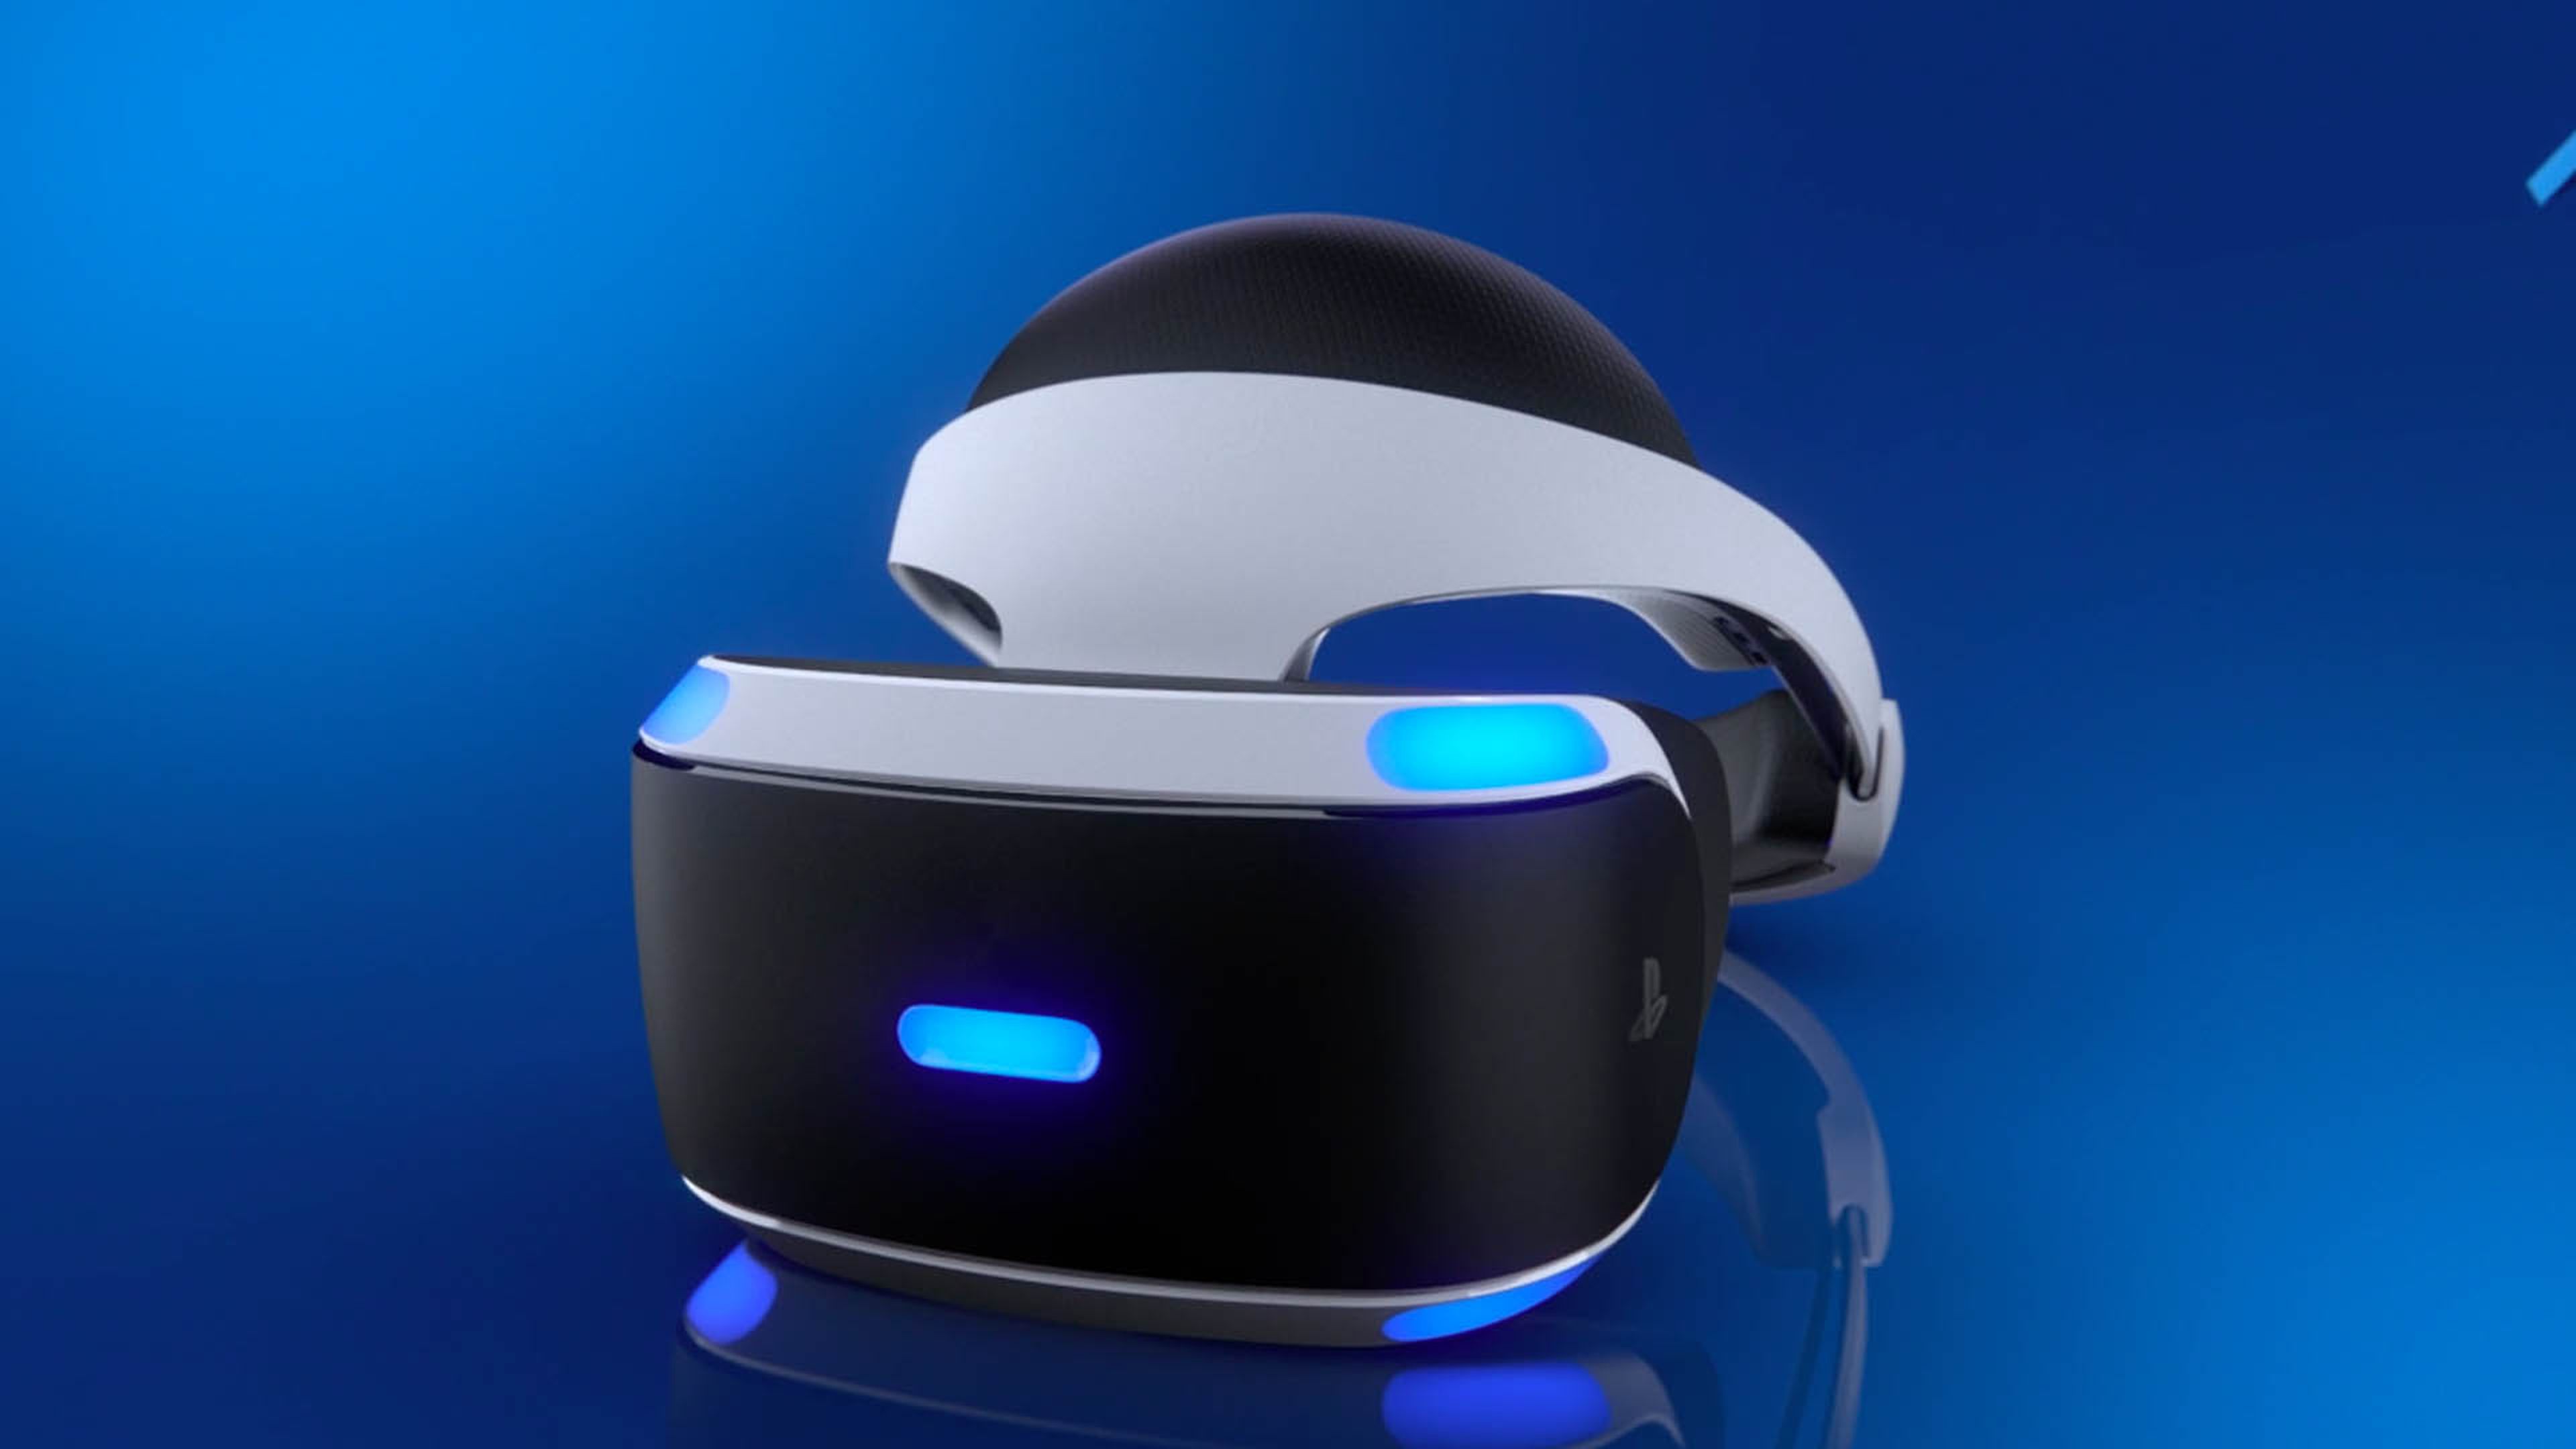 PS VR para PS5: Primeros detalles de las gafas de realidad virtual